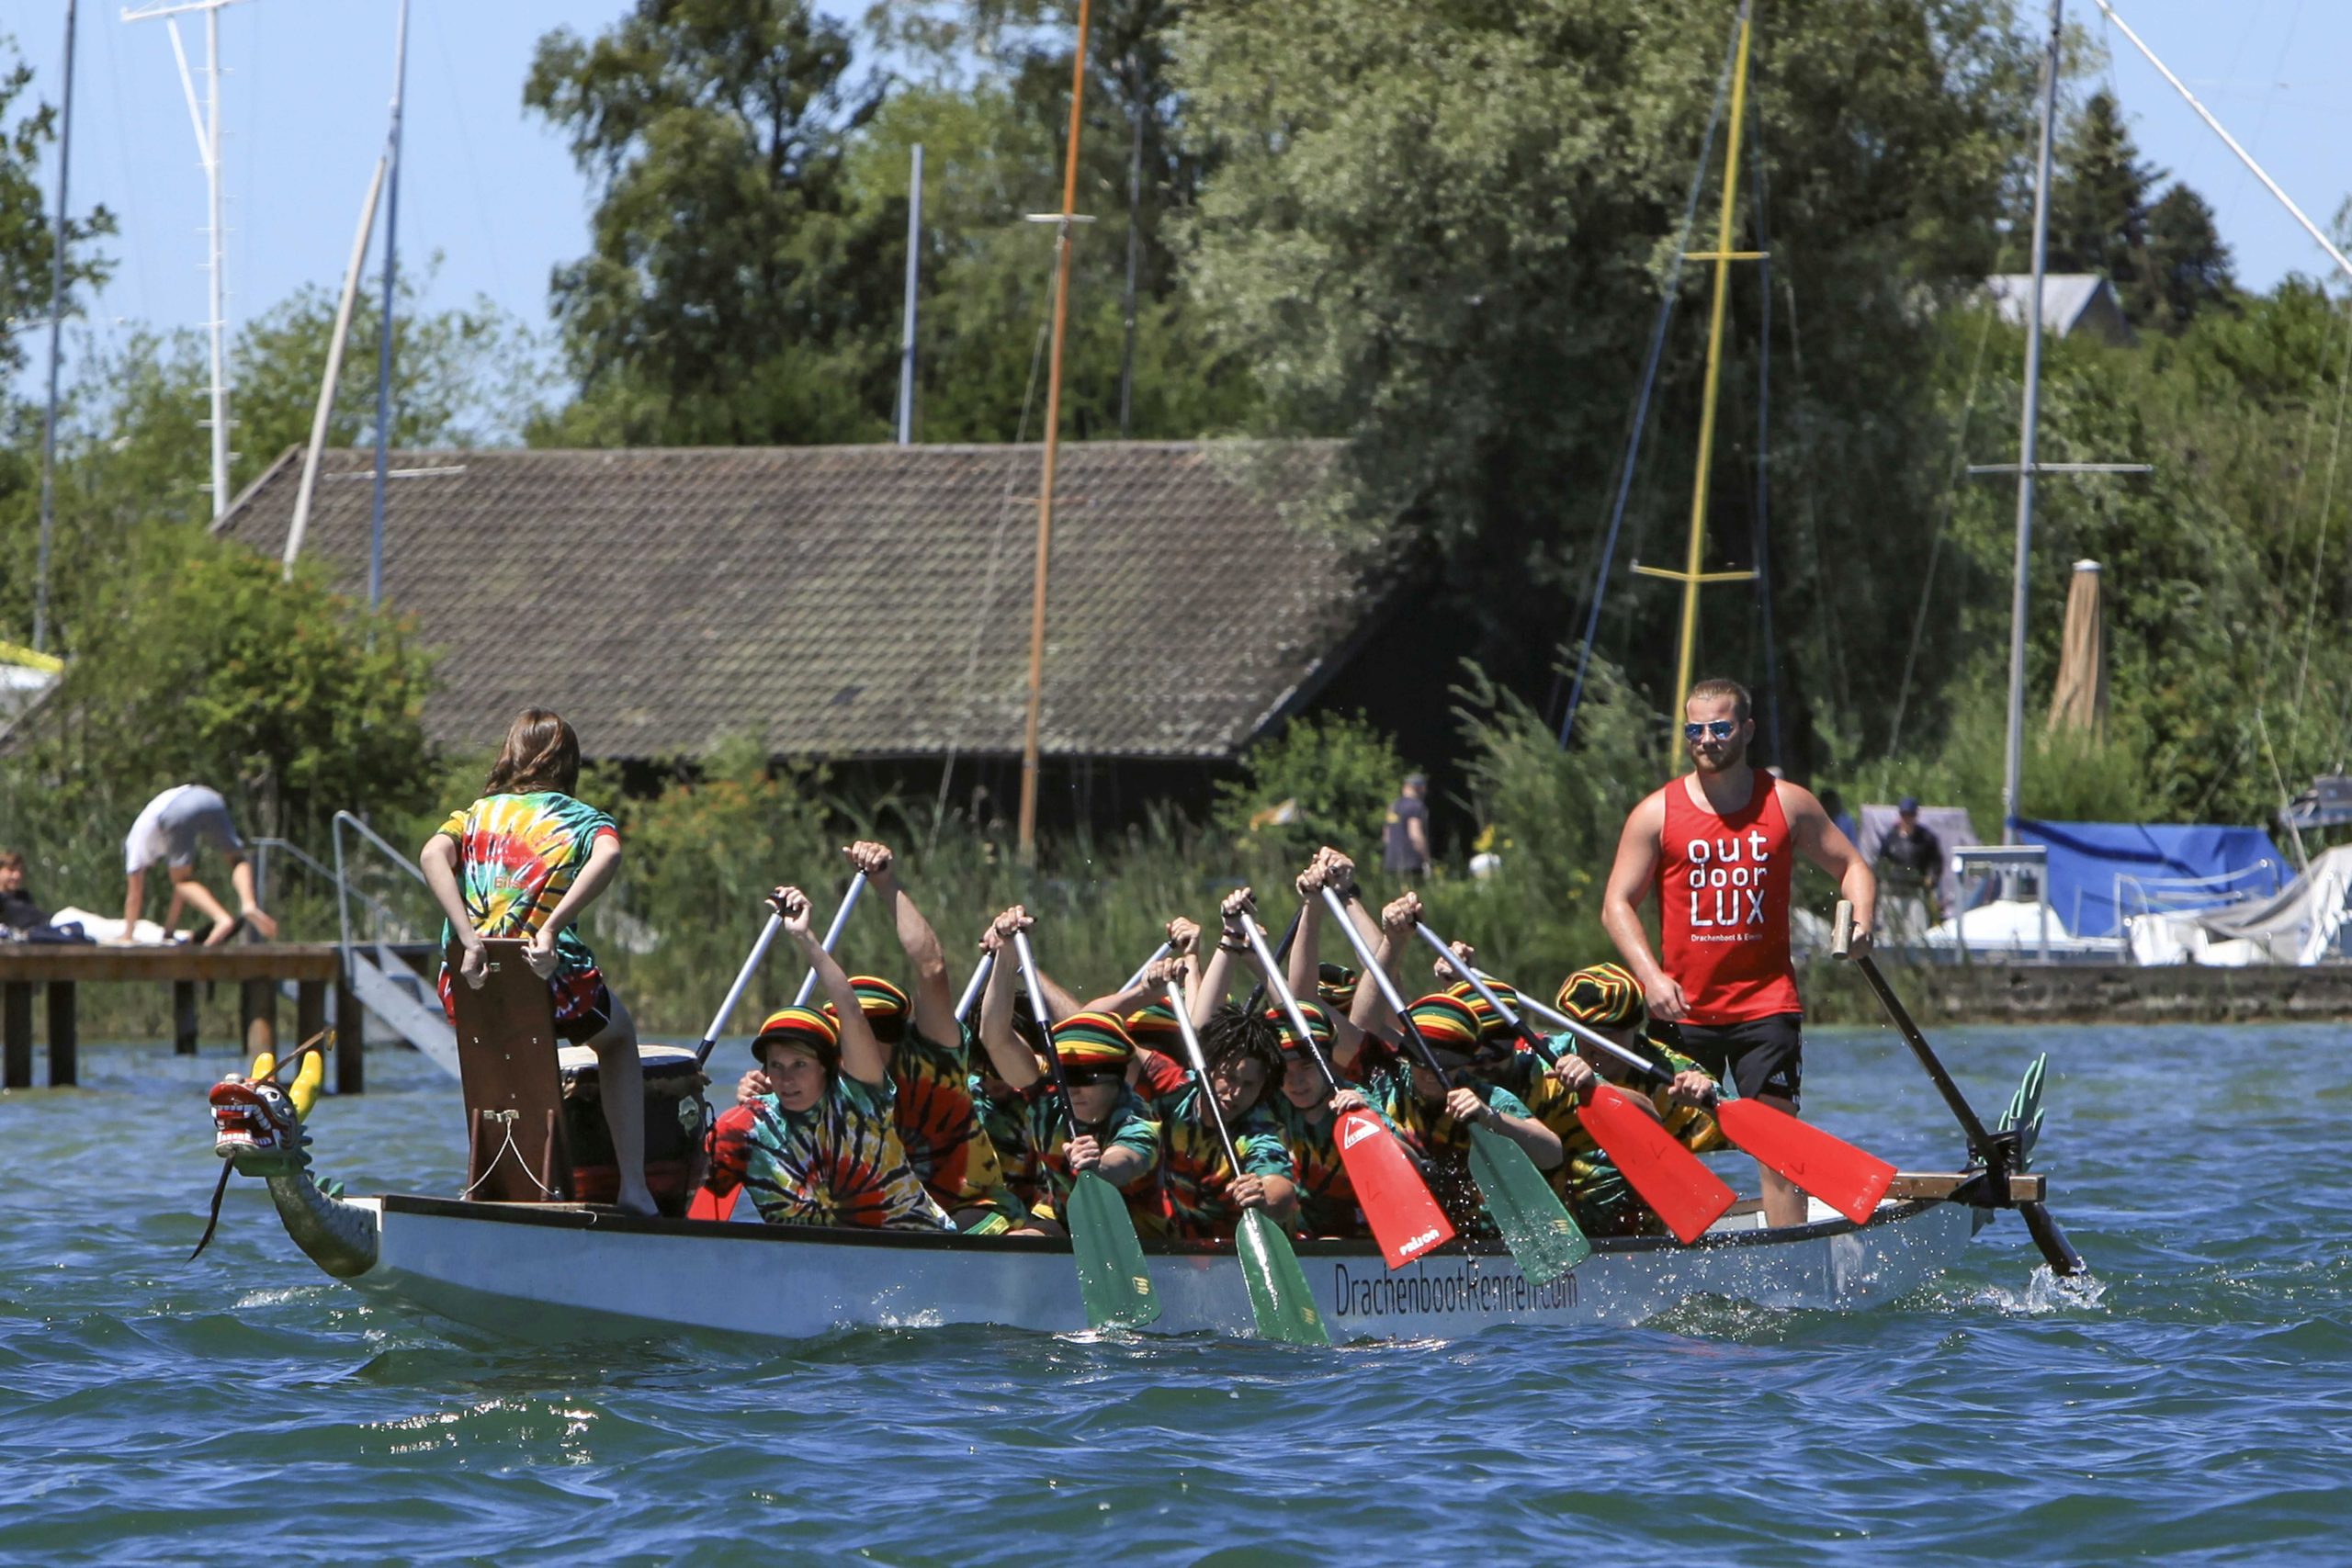 Beim Drachenbootrennen auf dem Chiemsee. Foto: Dirk-Uwe Lux